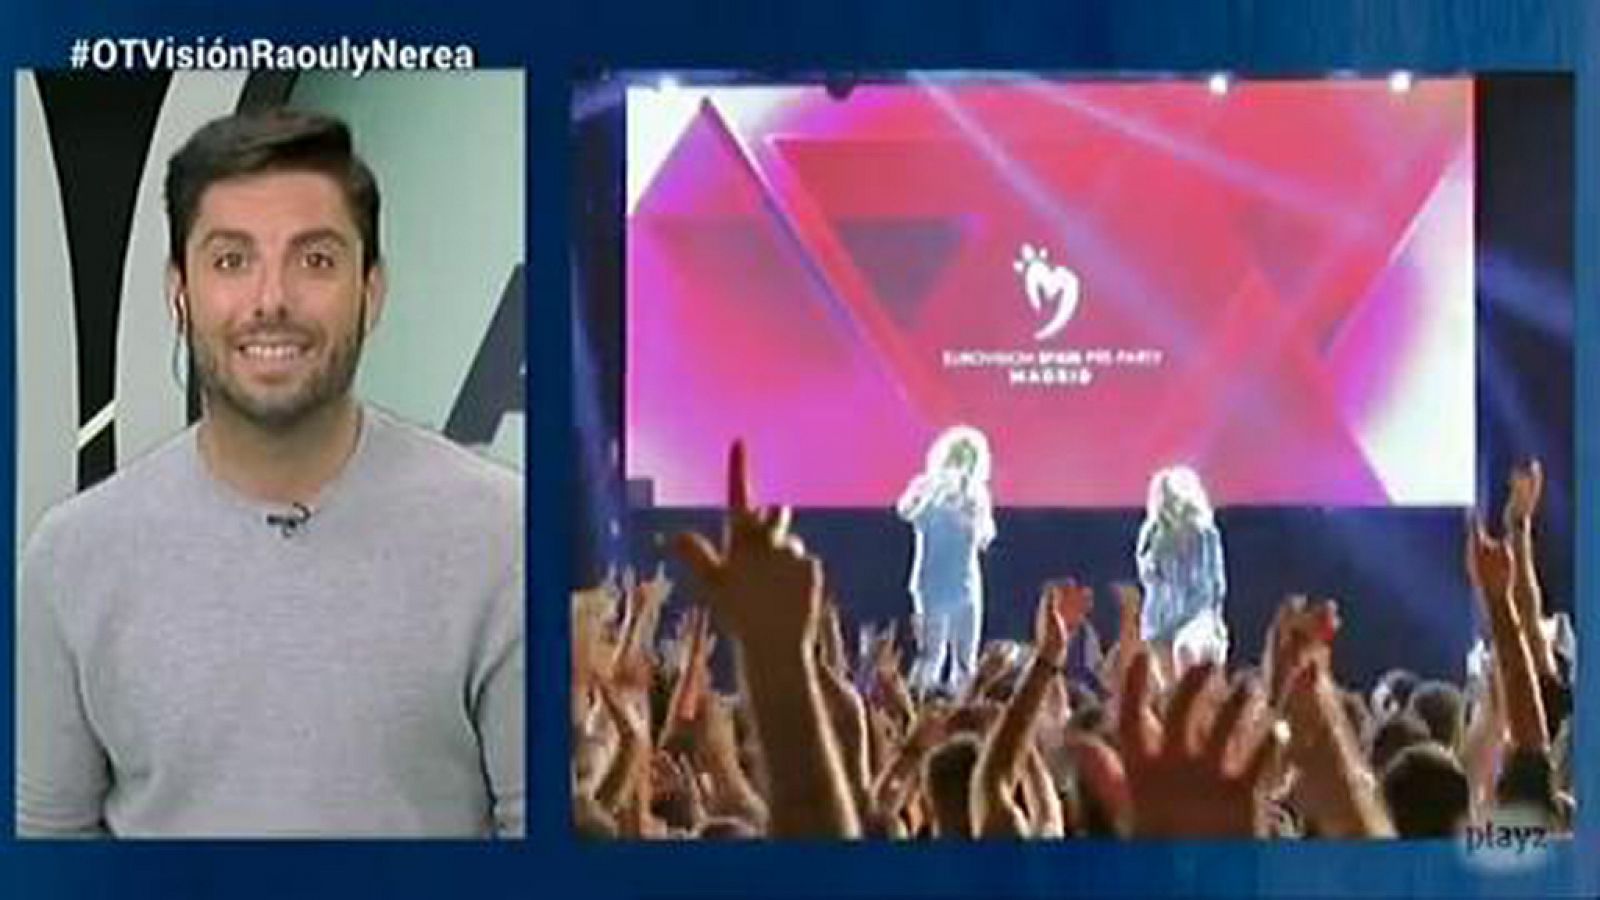 Eurovisión 2018: Manuel Mahía te invita a la preparty - OTVisión